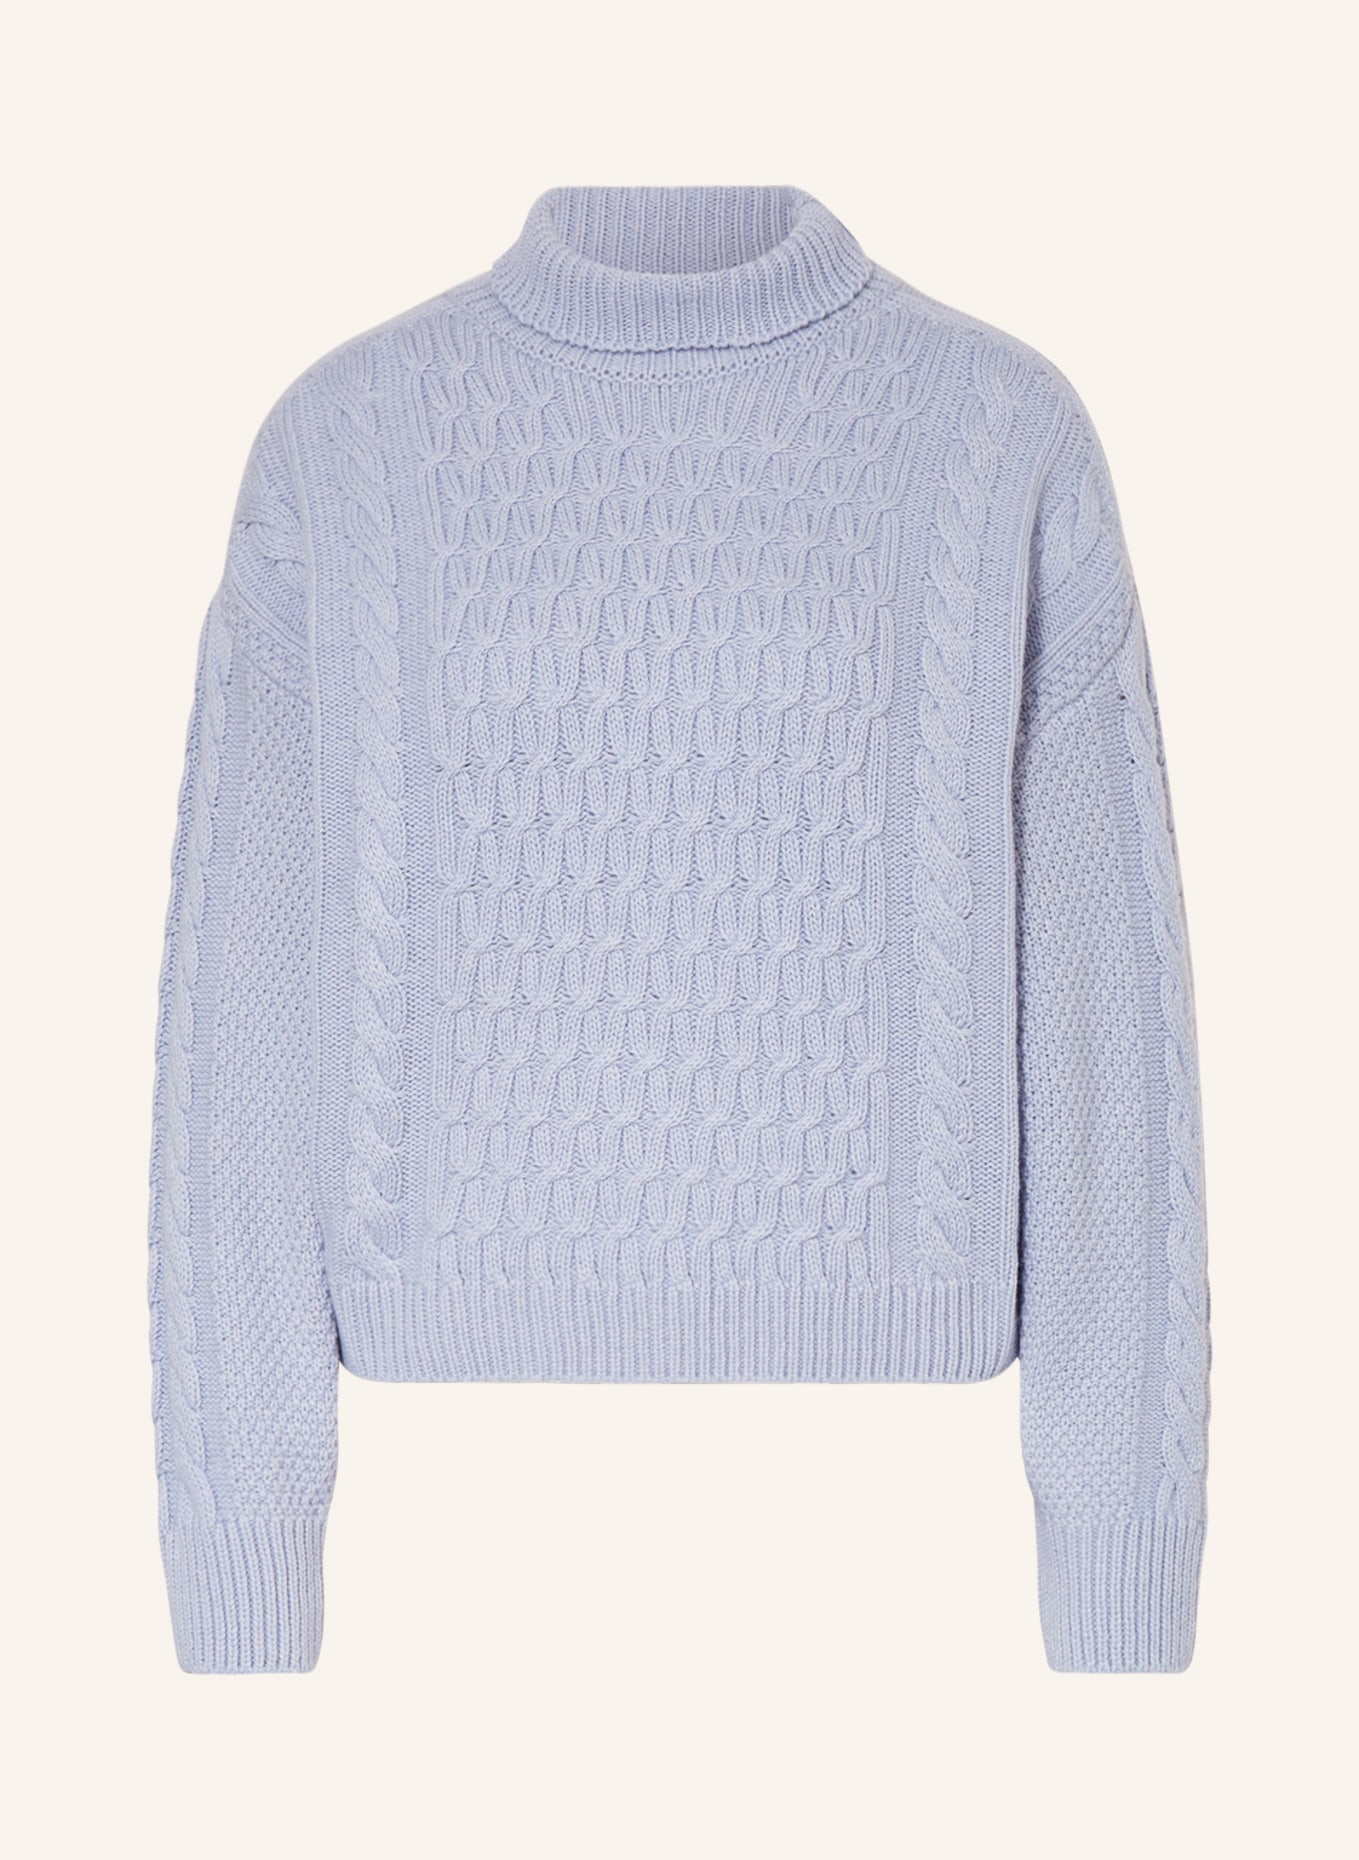 ANTONELLI firenze Pullover, Farbe: HELLBLAU (Bild 1)